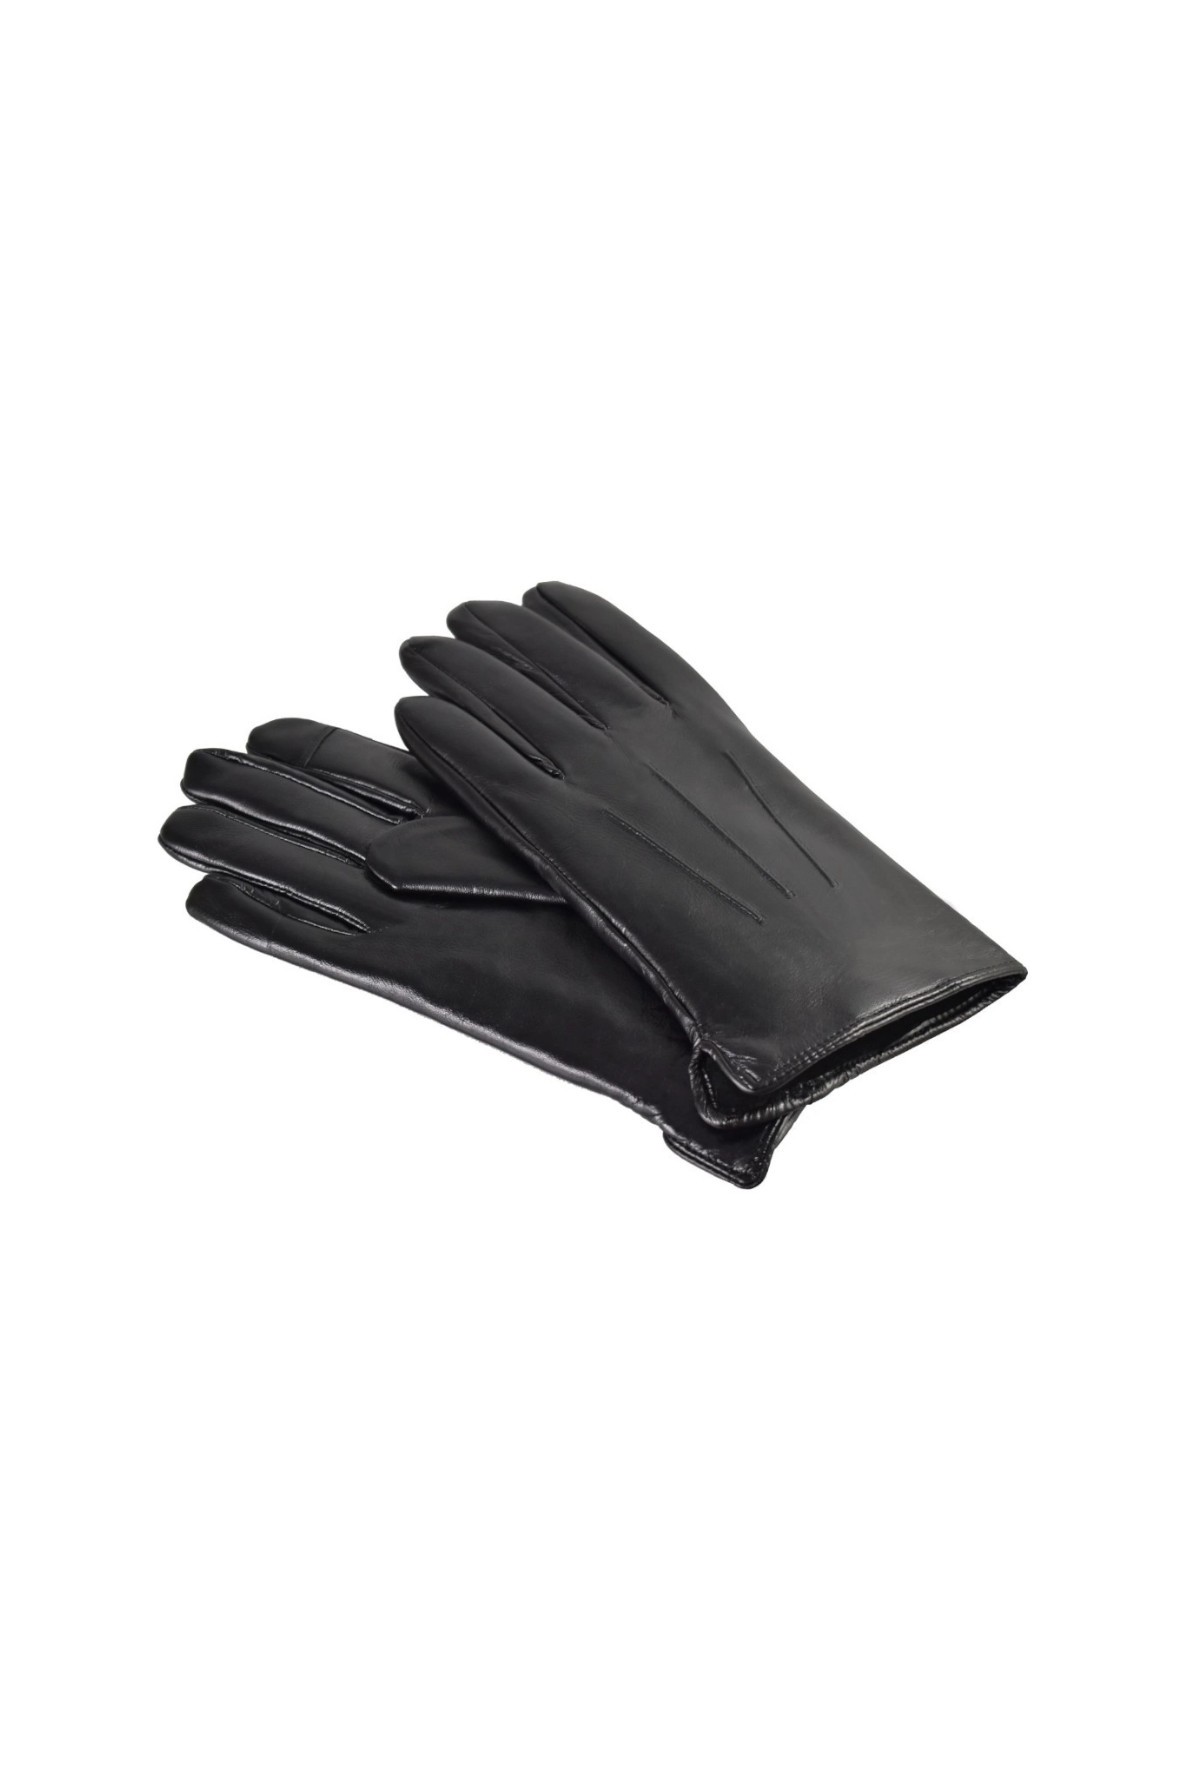 Rękawiczki męskie skórzane antybakteryjne - czarne roz. XL